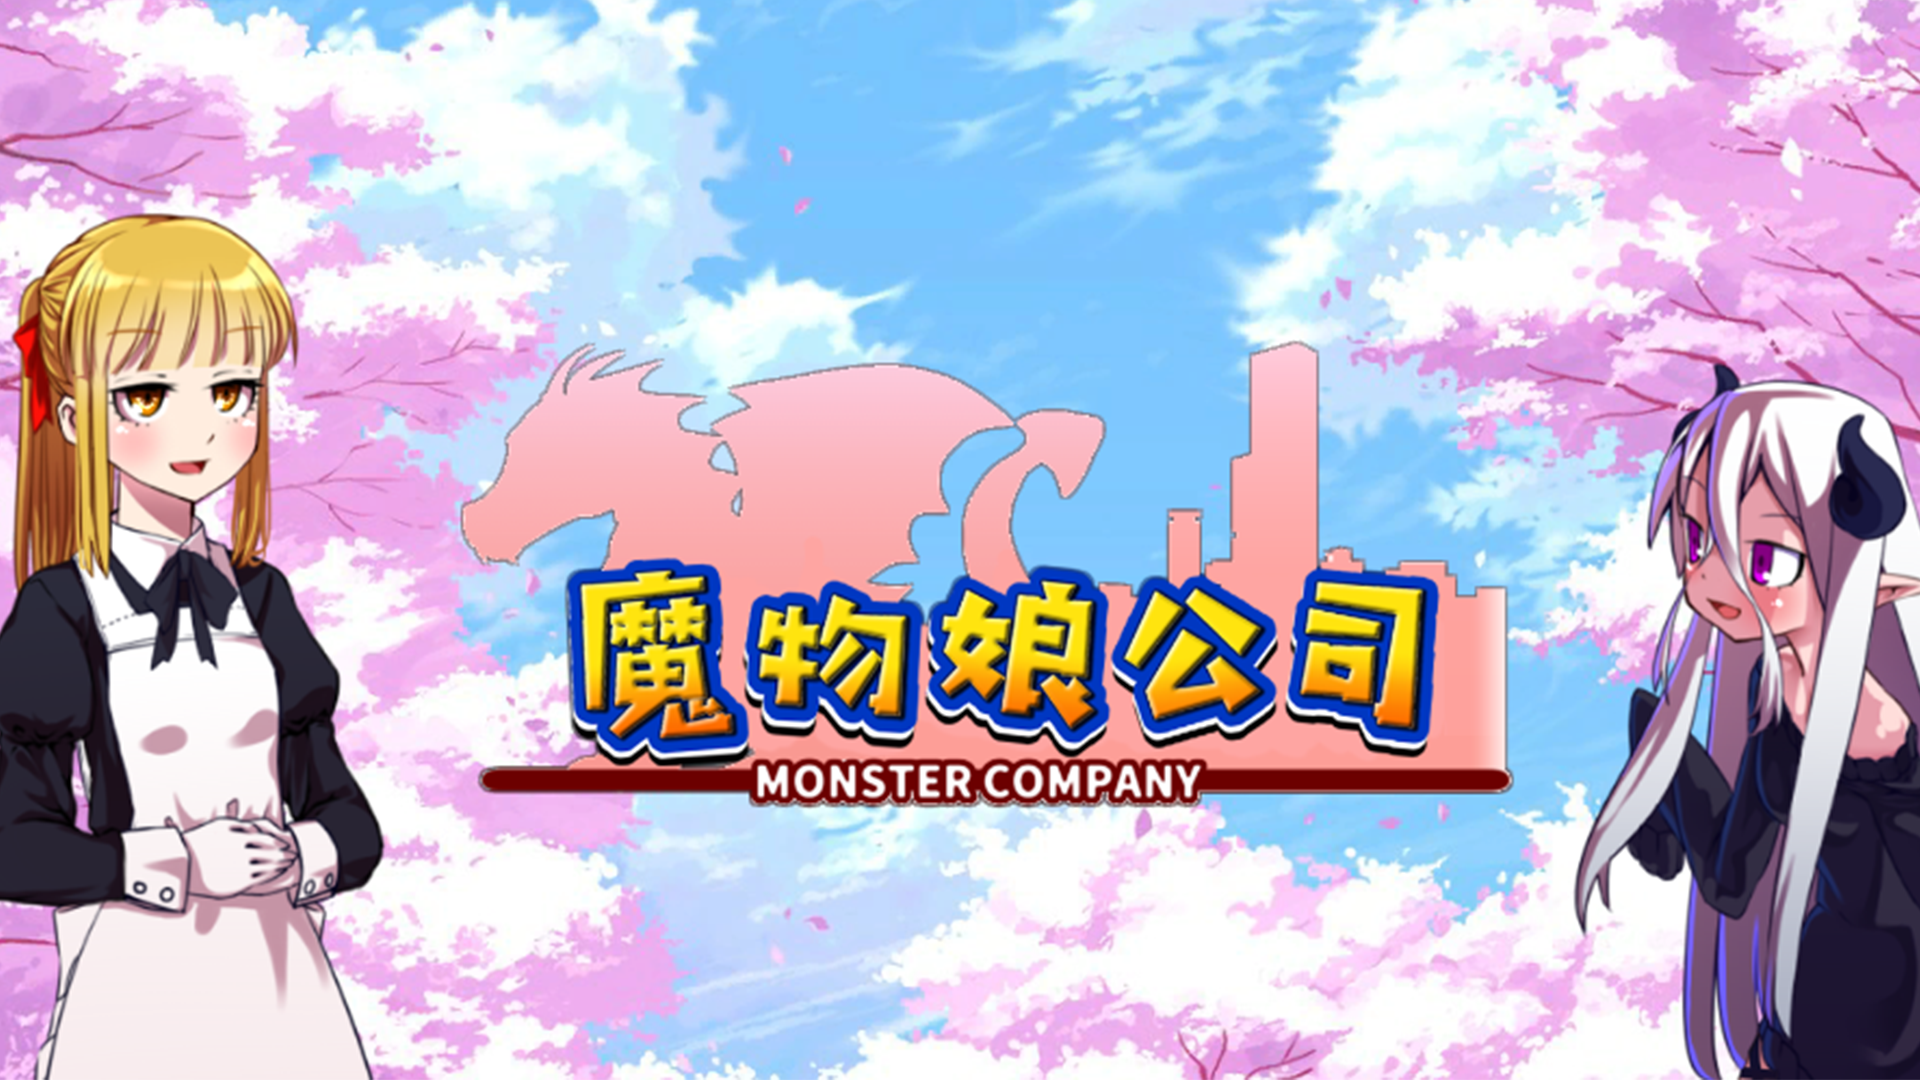 Banner of 魔物娘公司 